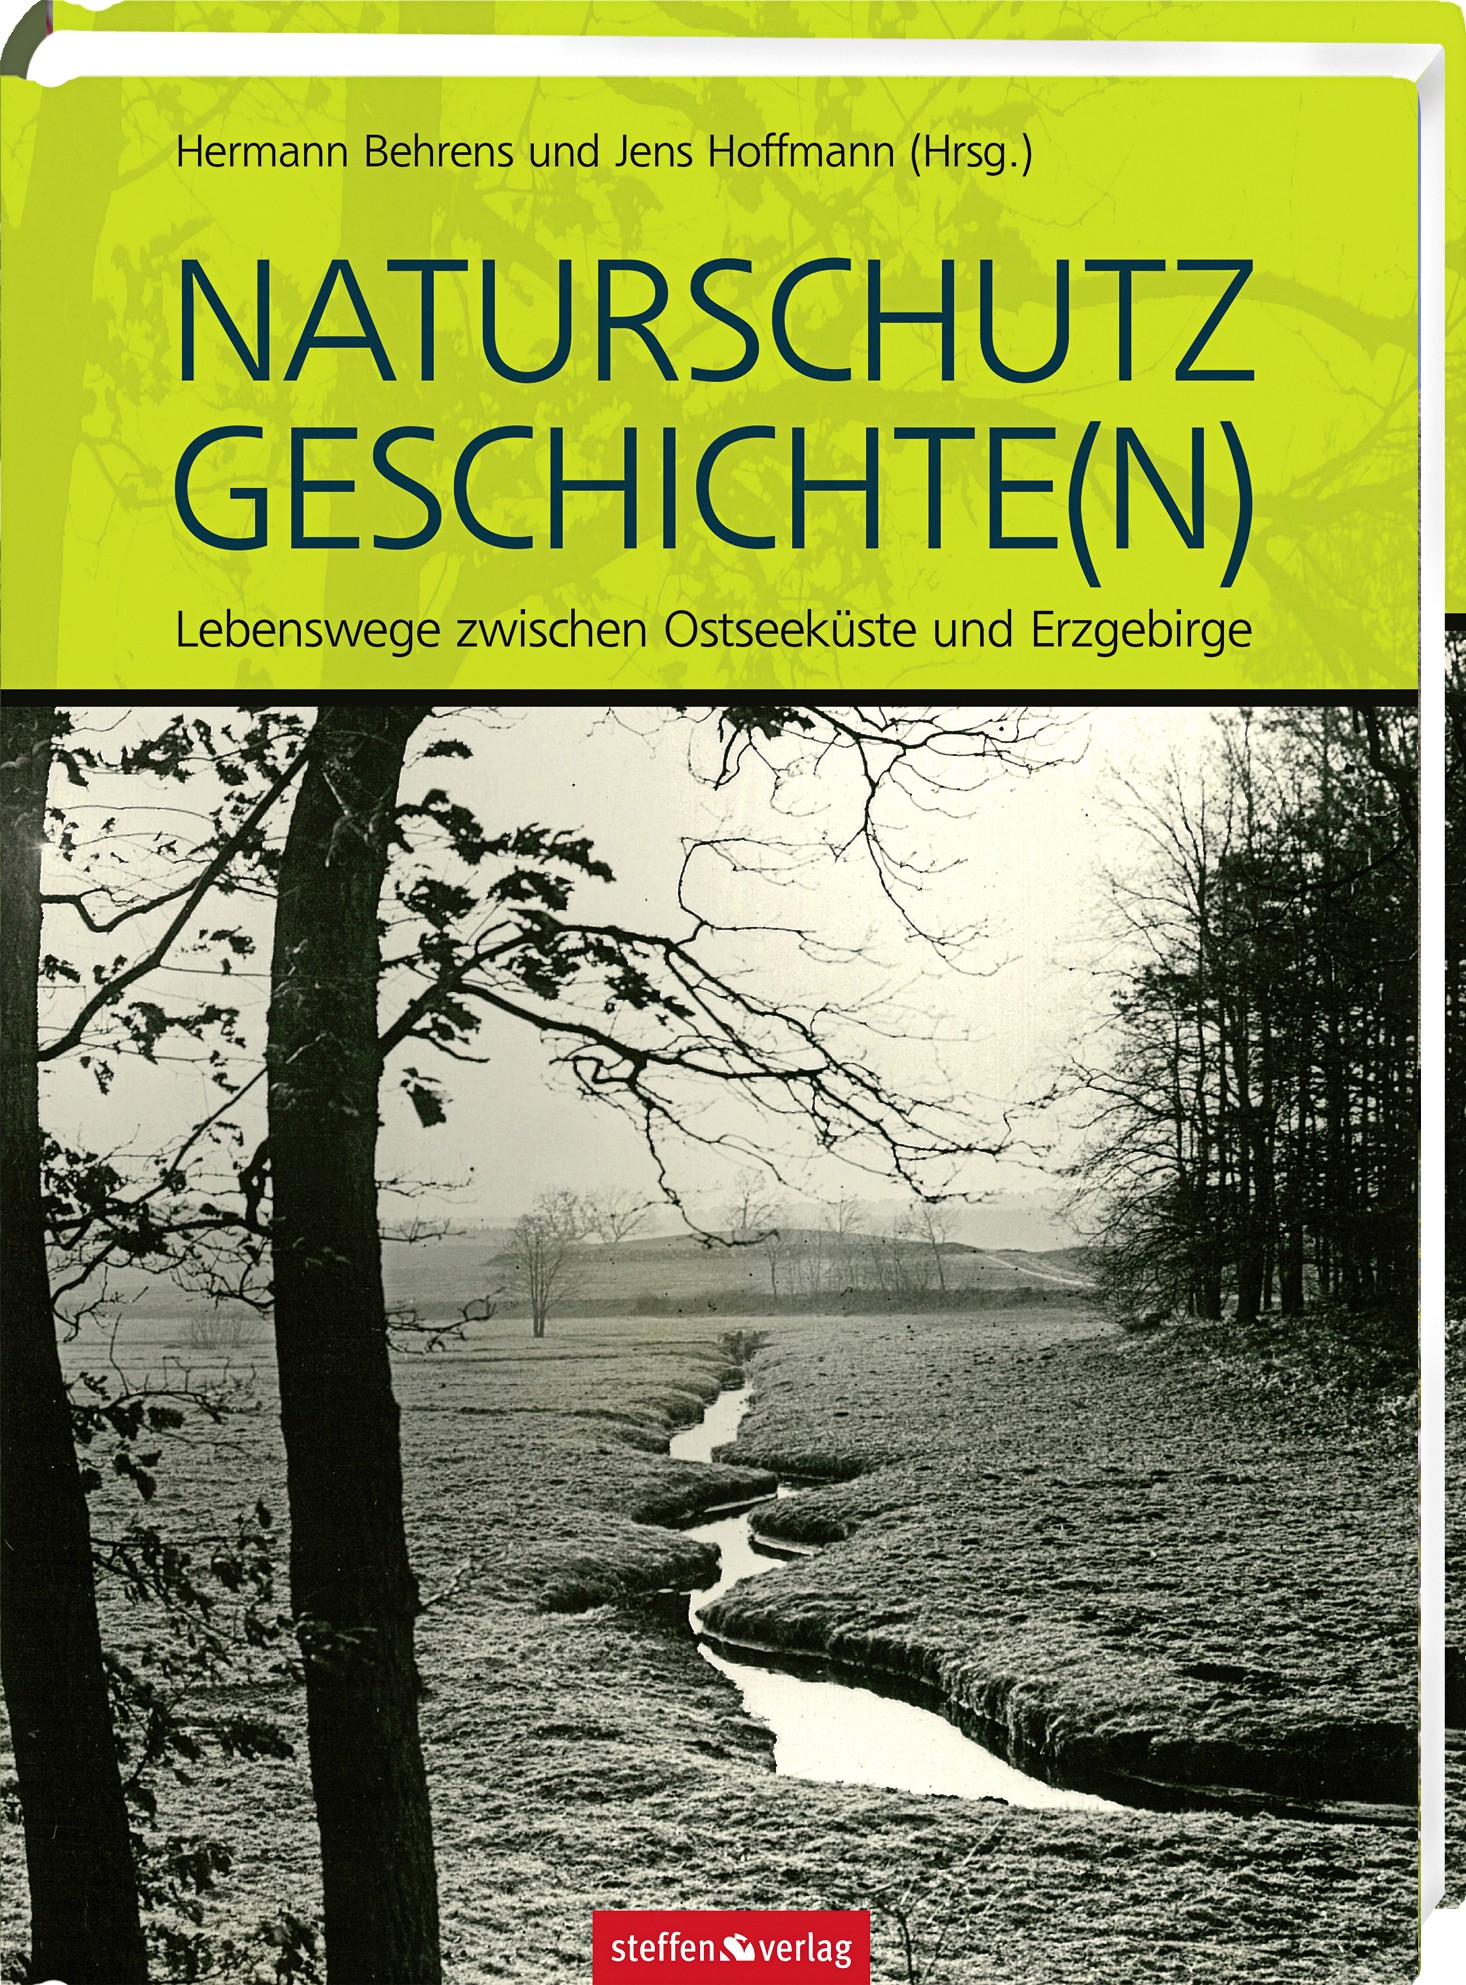 Naturschutz Geschichte(n) - Behrens, Hermann|Hoffmann, Jens